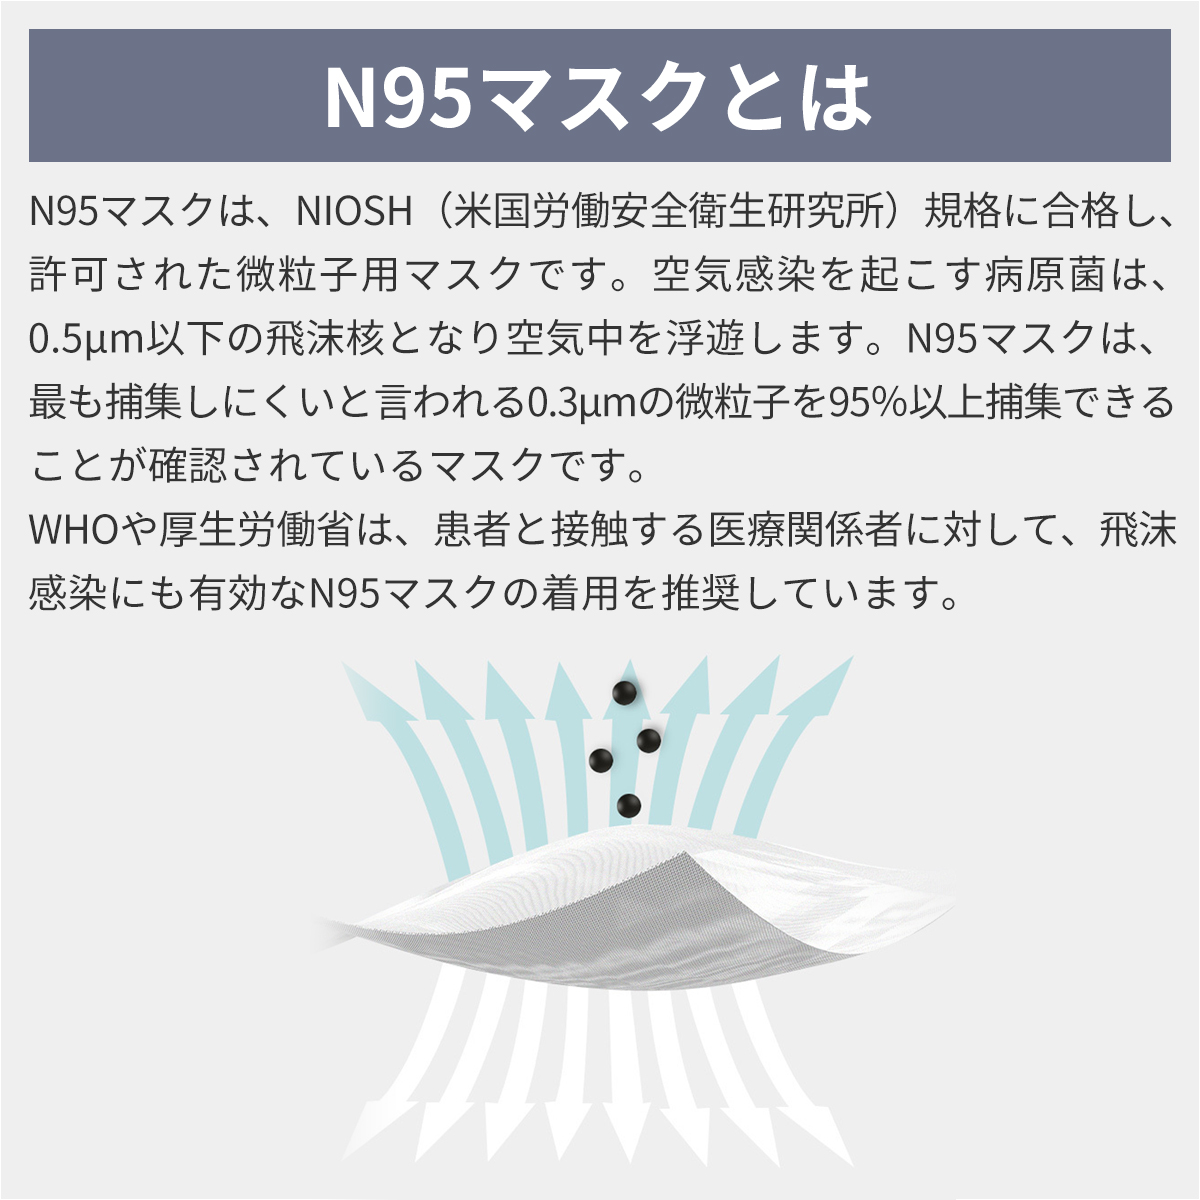  RABLISS N95 マスク カップ型 20枚入×10